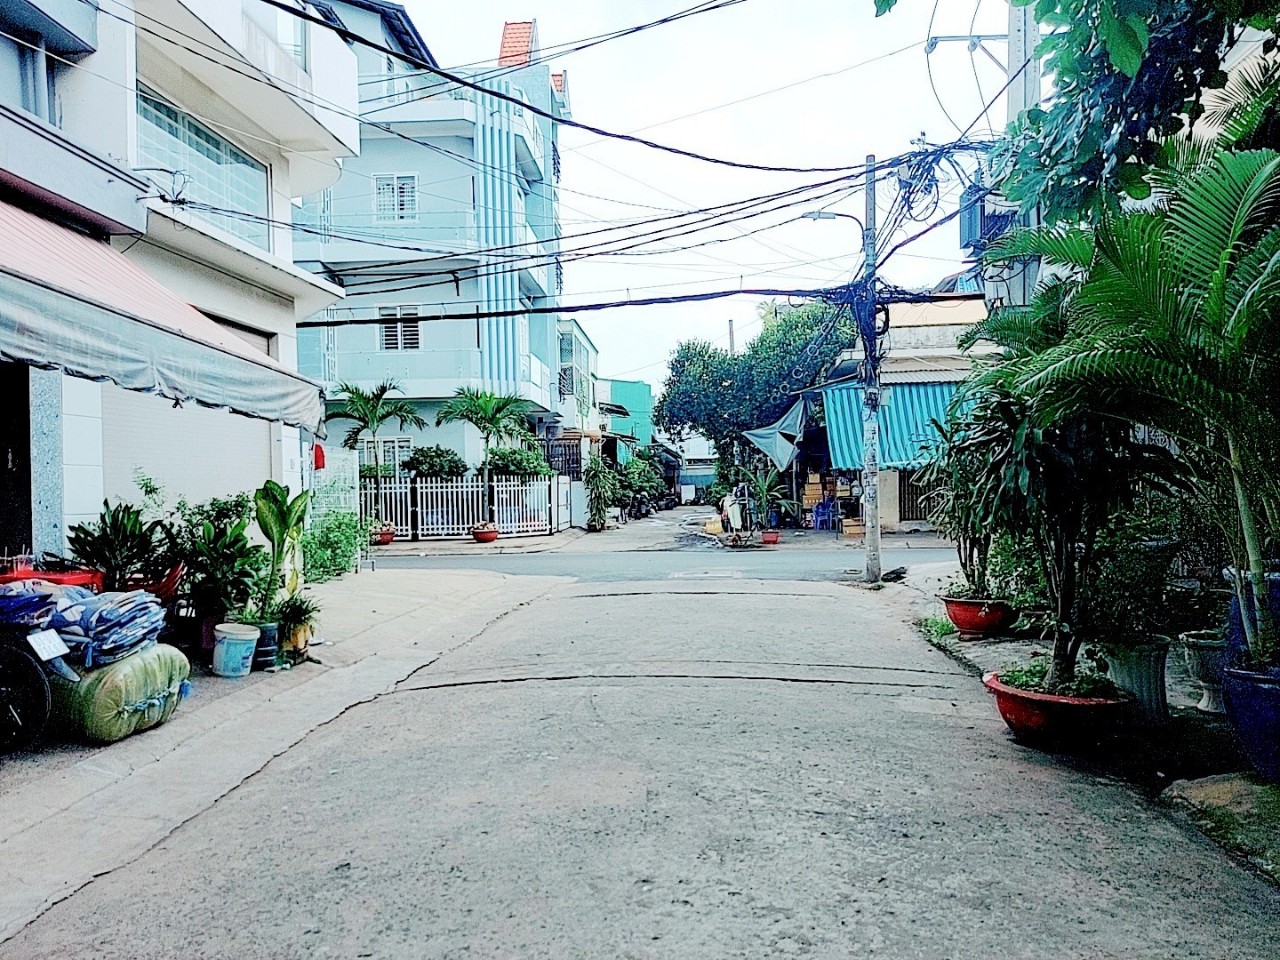 Bán nhà khu vip đường Bình Trị Đông quận Bình Tân, hẻm 6 mét có lề đường, đậu ô tô cả ngày